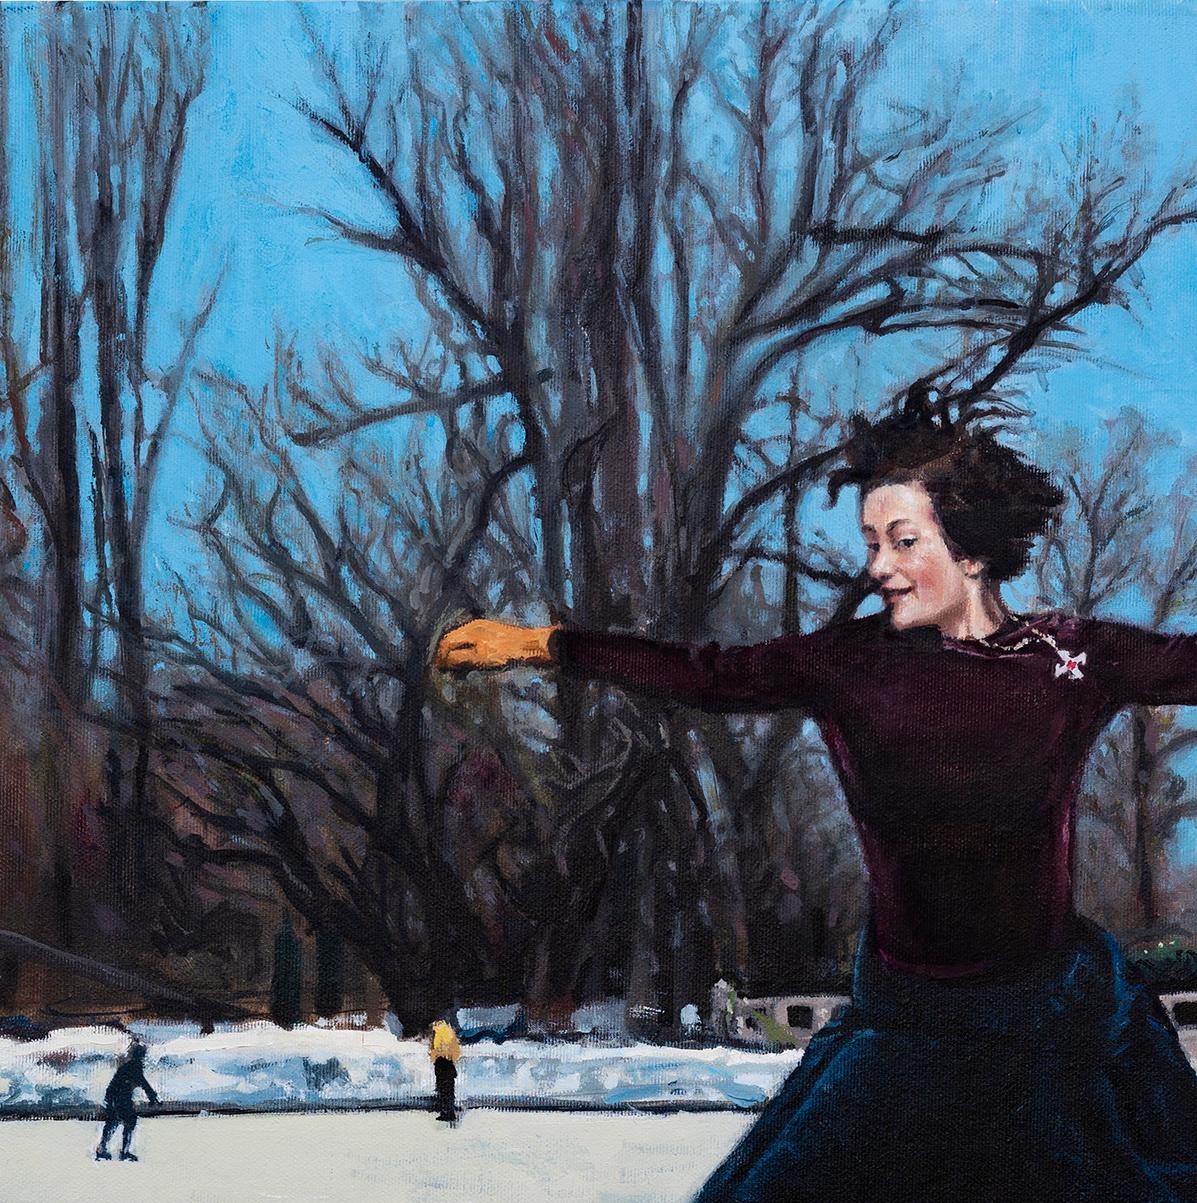 Floating Between Wars - Zeitgenössisch, Stadtlandschaft, Skate, Frau, Winter, Weiß (Blau), Figurative Painting, von Mihai Florea